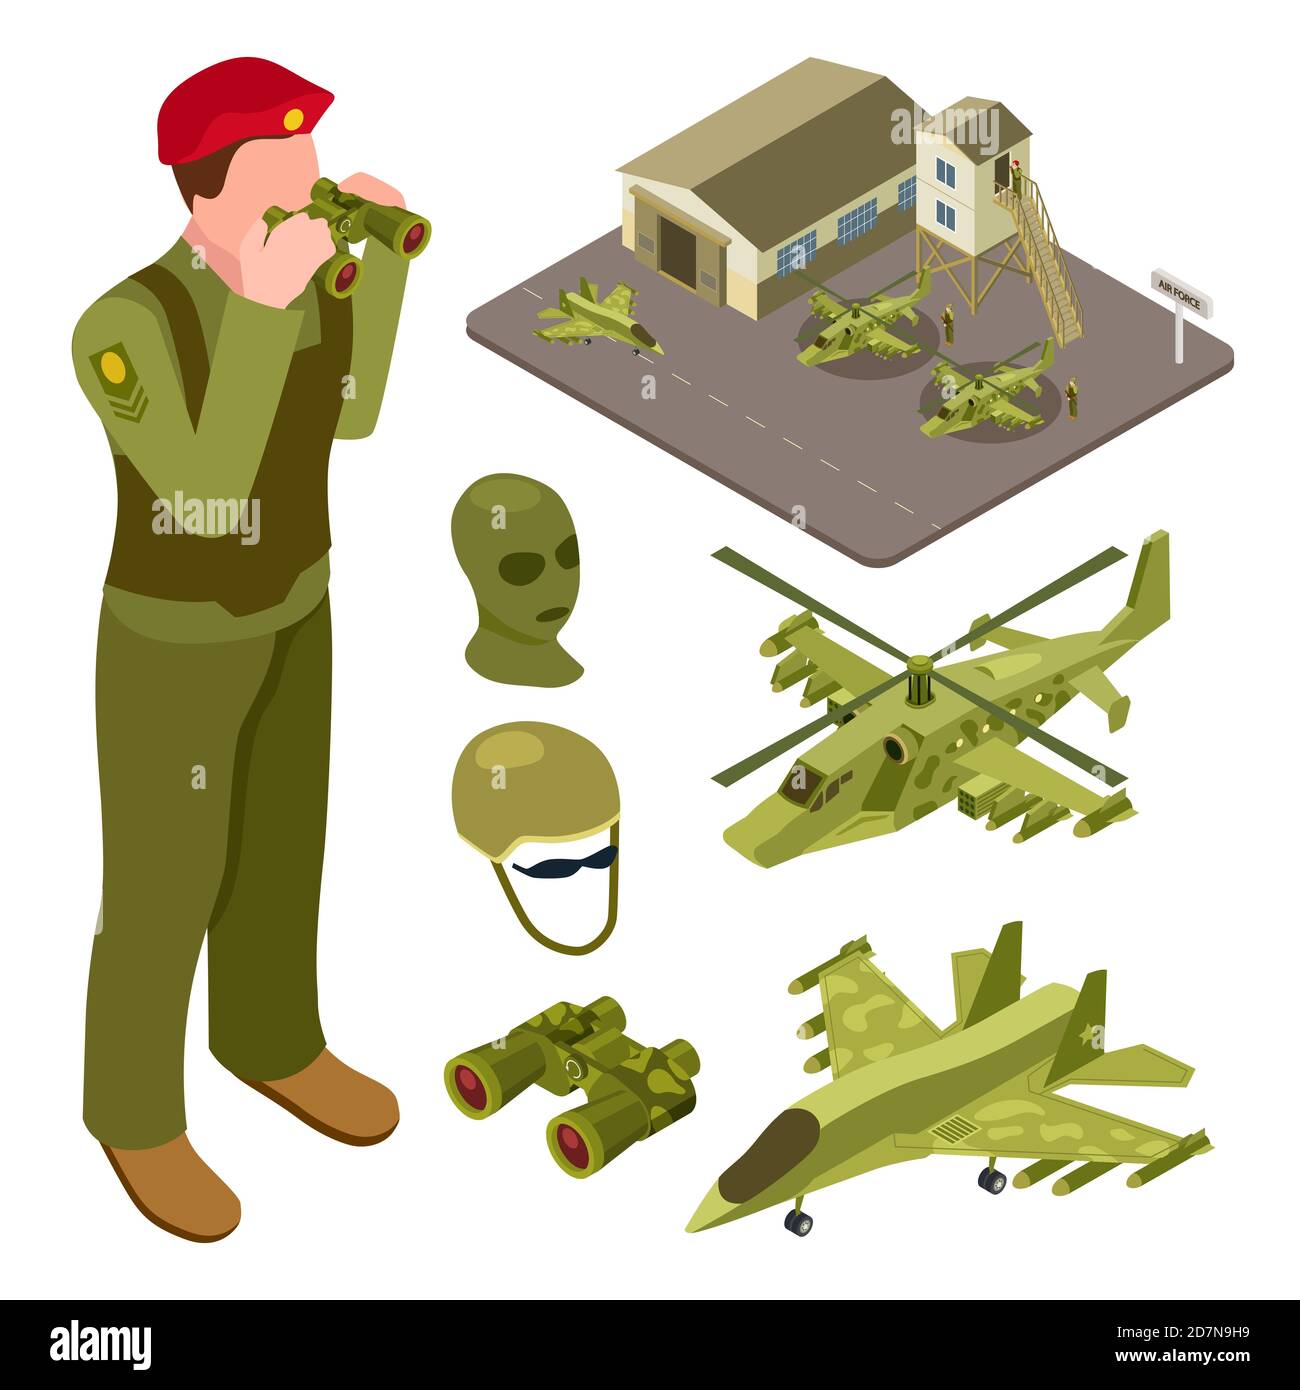 Militärische Luftwaffe Basis isometrisch mit Hubschrauber, Kampfflugzeug, Soldaten Vektor-Illustration. Isometrische Flugzeug Militär-und Luftverteidigung Stock Vektor